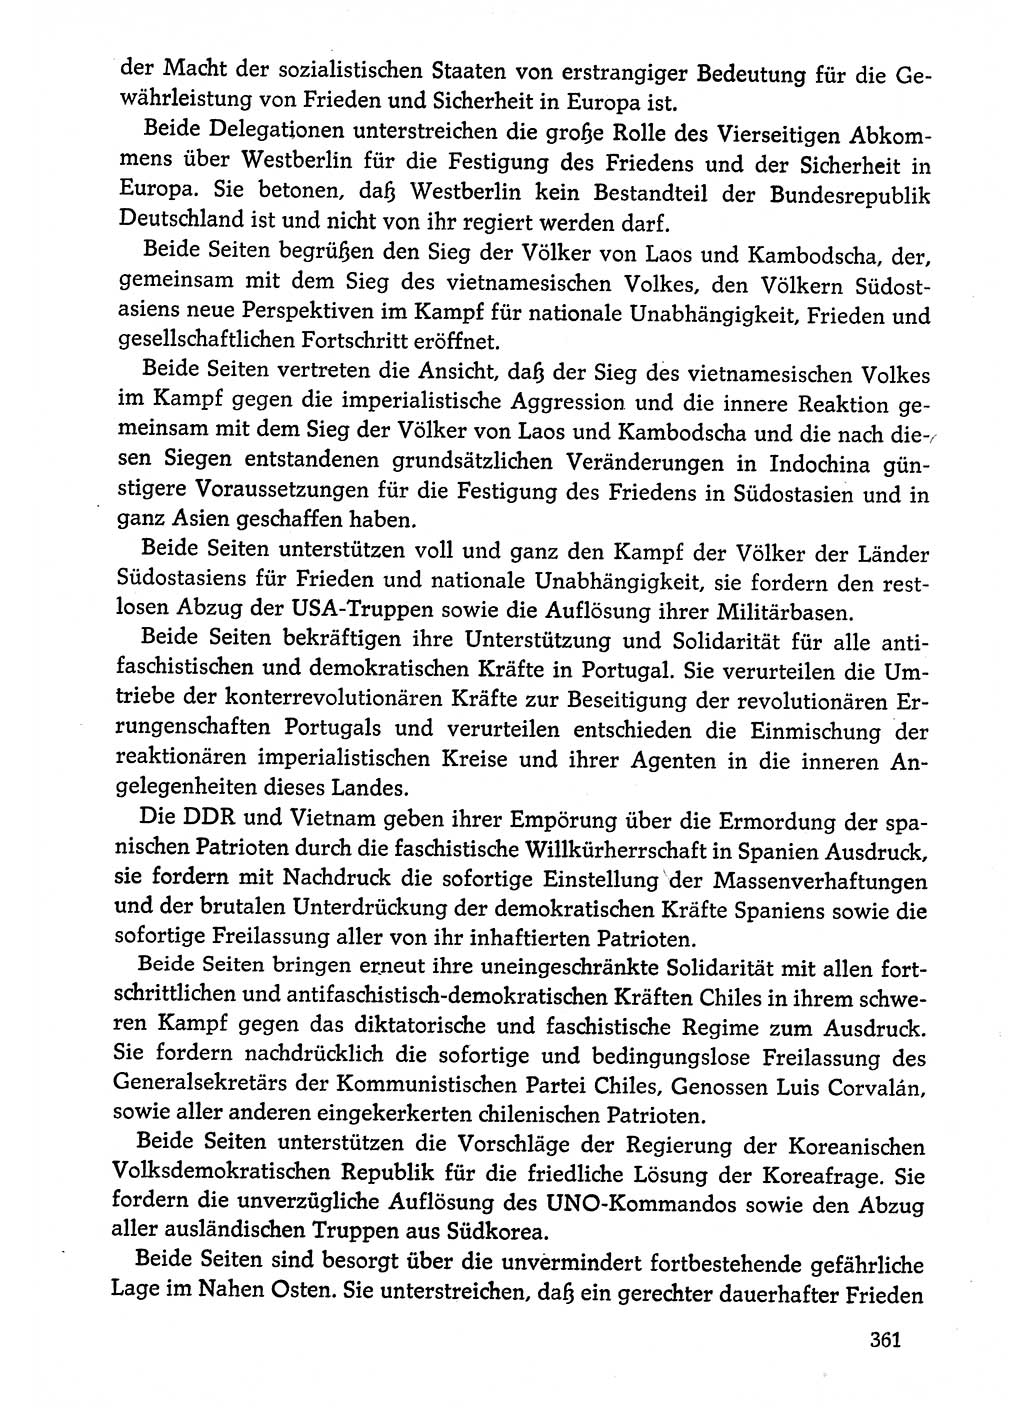 Dokumente der Sozialistischen Einheitspartei Deutschlands (SED) [Deutsche Demokratische Republik (DDR)] 1974-1975, Seite 361 (Dok. SED DDR 1978, Bd. ⅩⅤ, S. 361)